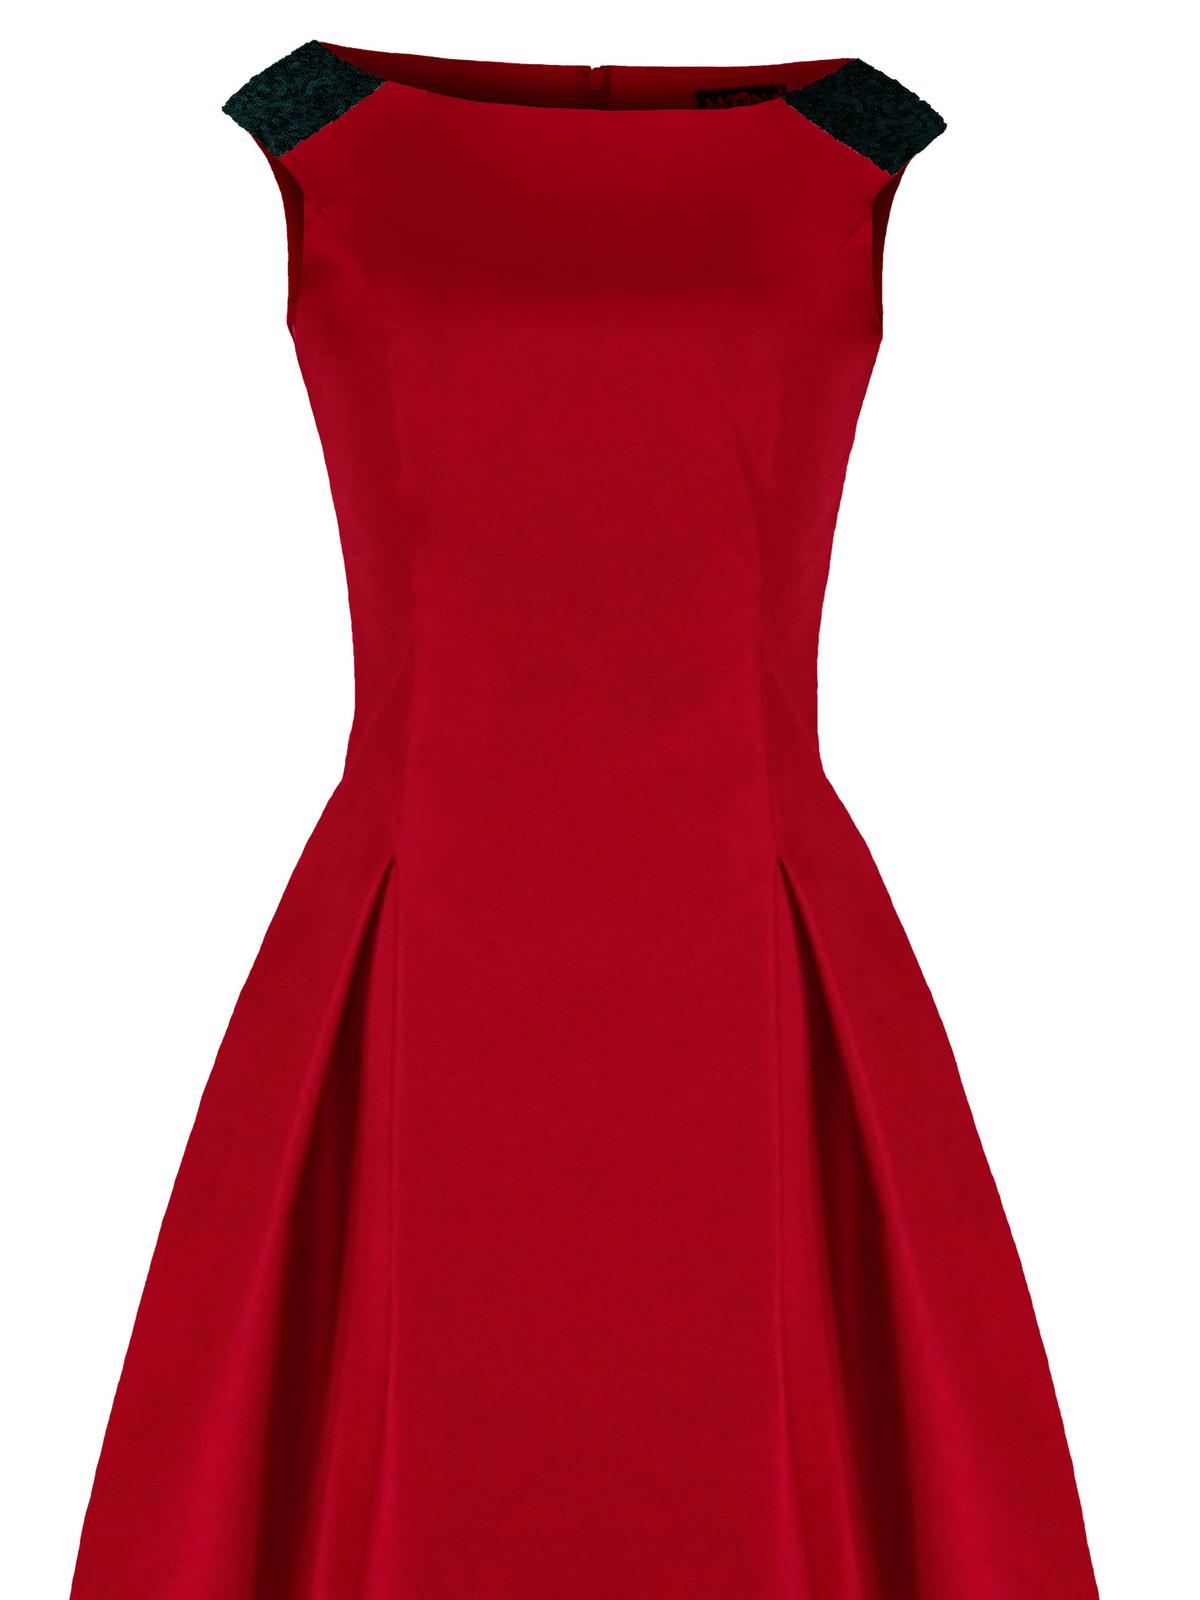 czerwona sukienka Lejdi.sklep.pl 229zł